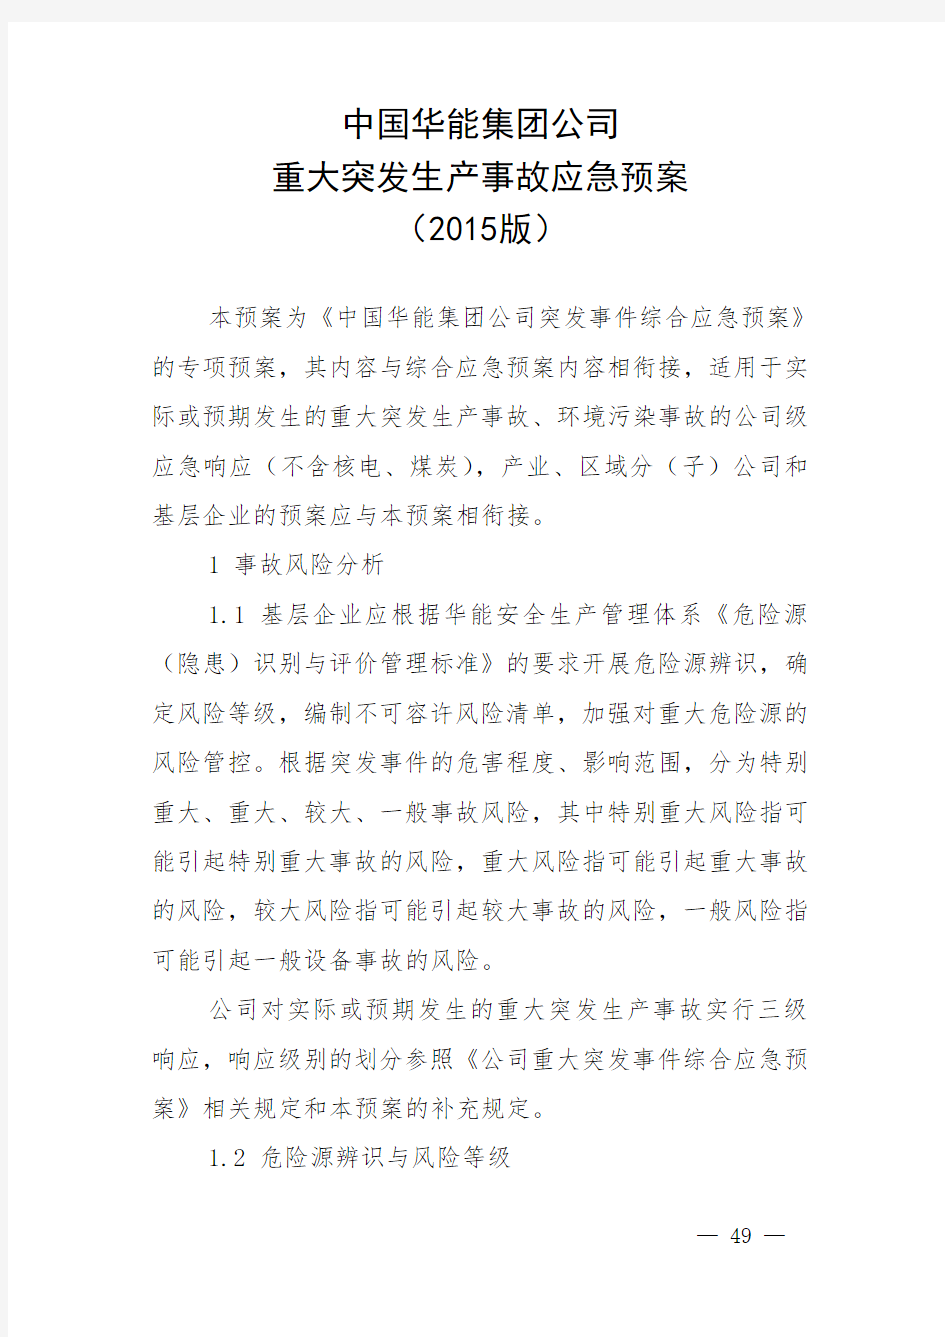 中国华能集团公司管理系统重大突发生产事故应急预案(2015版)